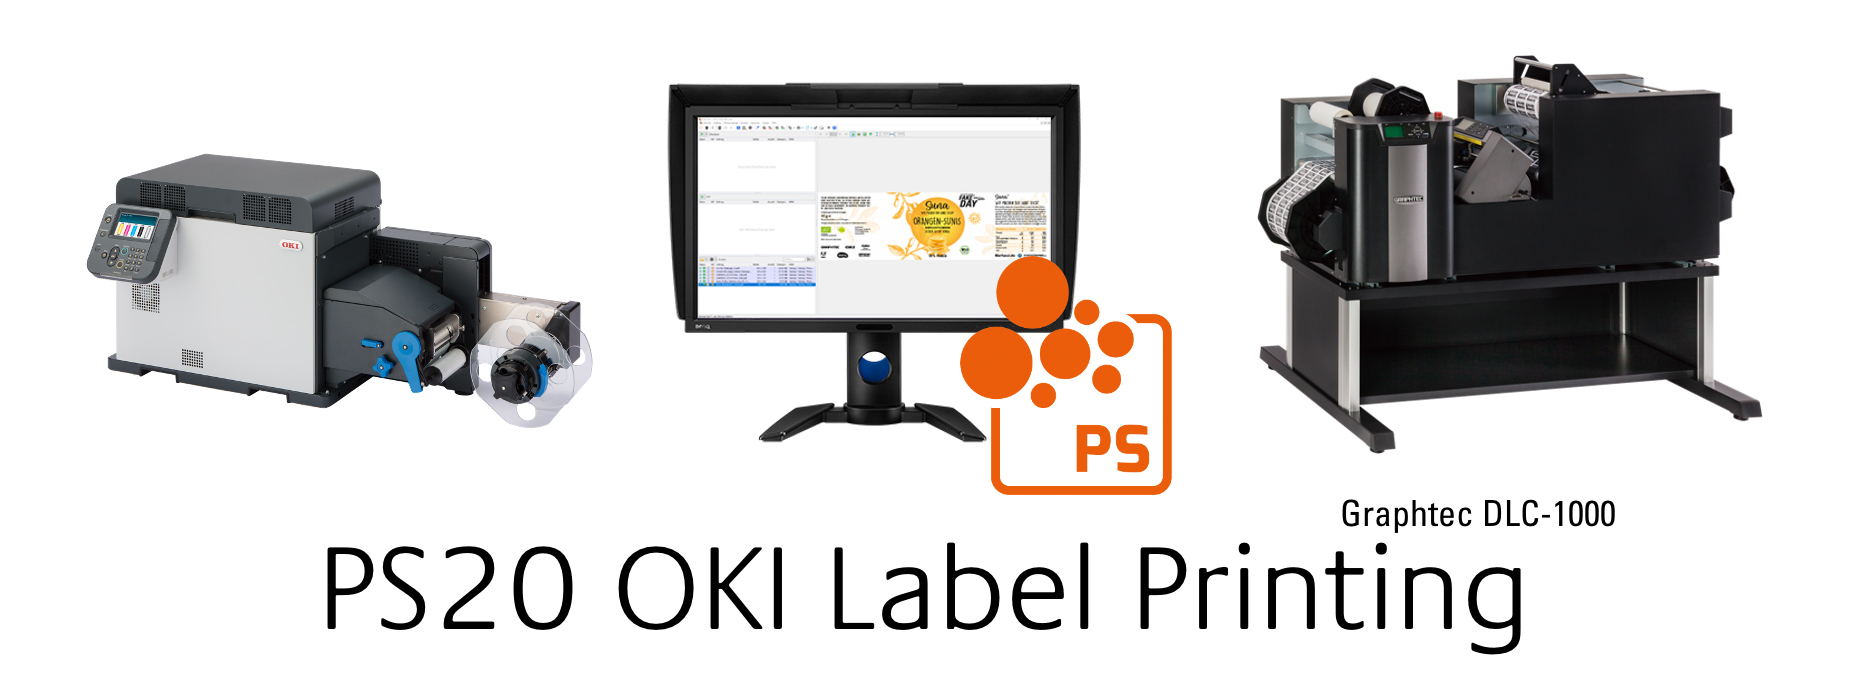 ColorGATE for OKI Label Printing